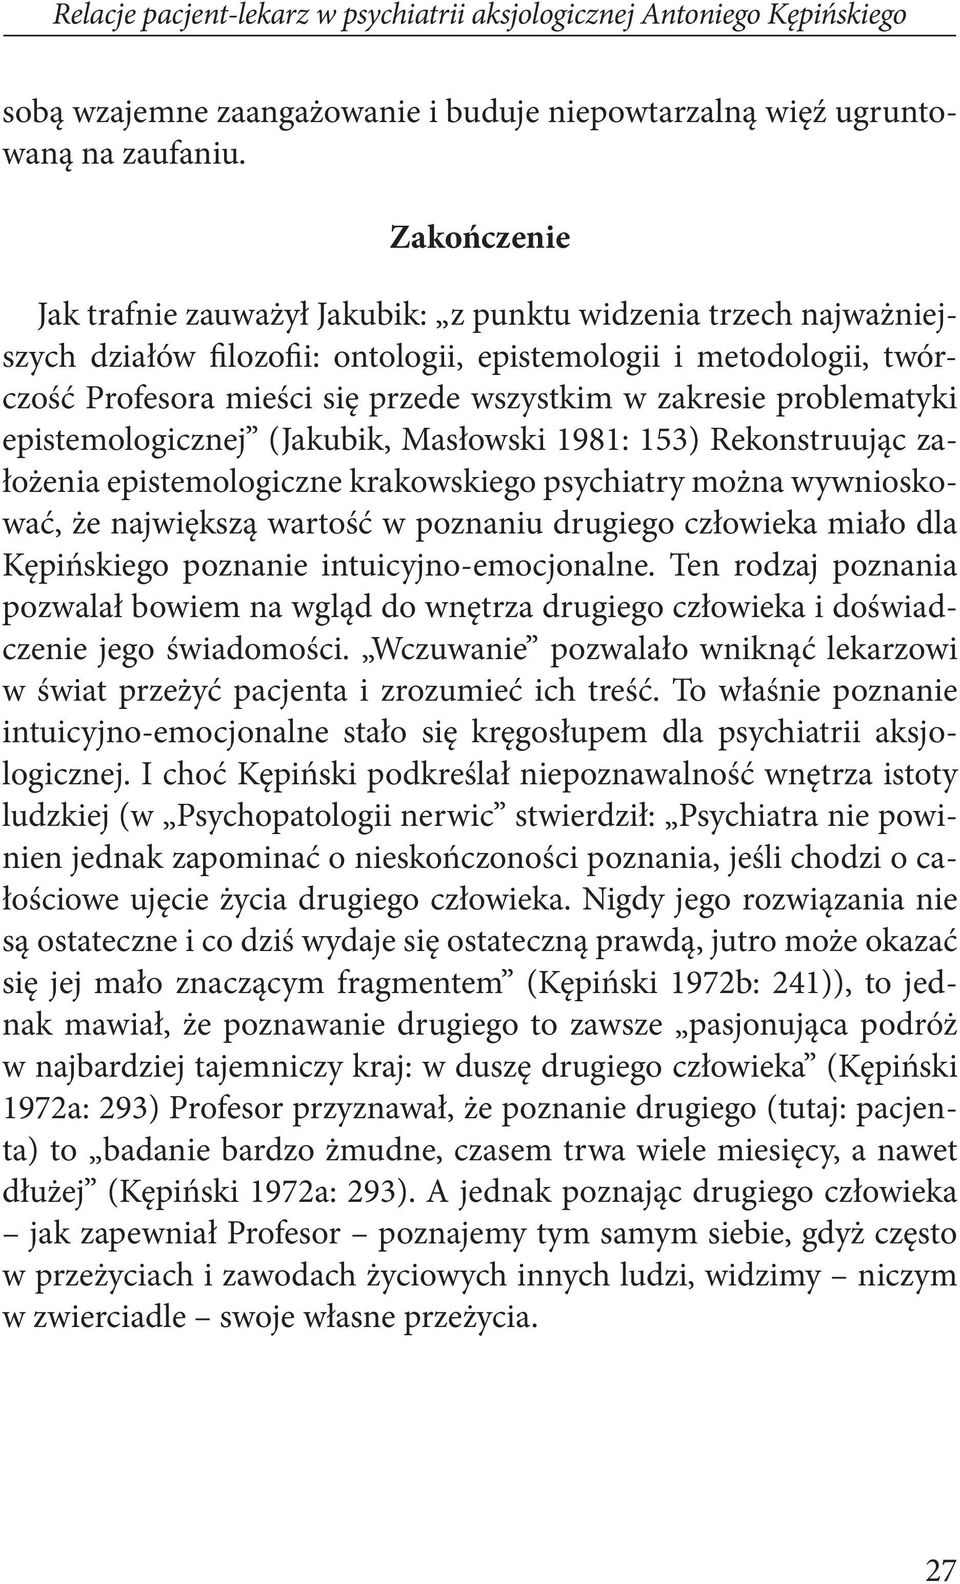 zakresie problematyki epistemologicznej (Jakubik, Masłowski 1981: 153) Rekonstruując założenia epistemologiczne krakowskiego psychiatry można wywnioskować, że największą wartość w poznaniu drugiego